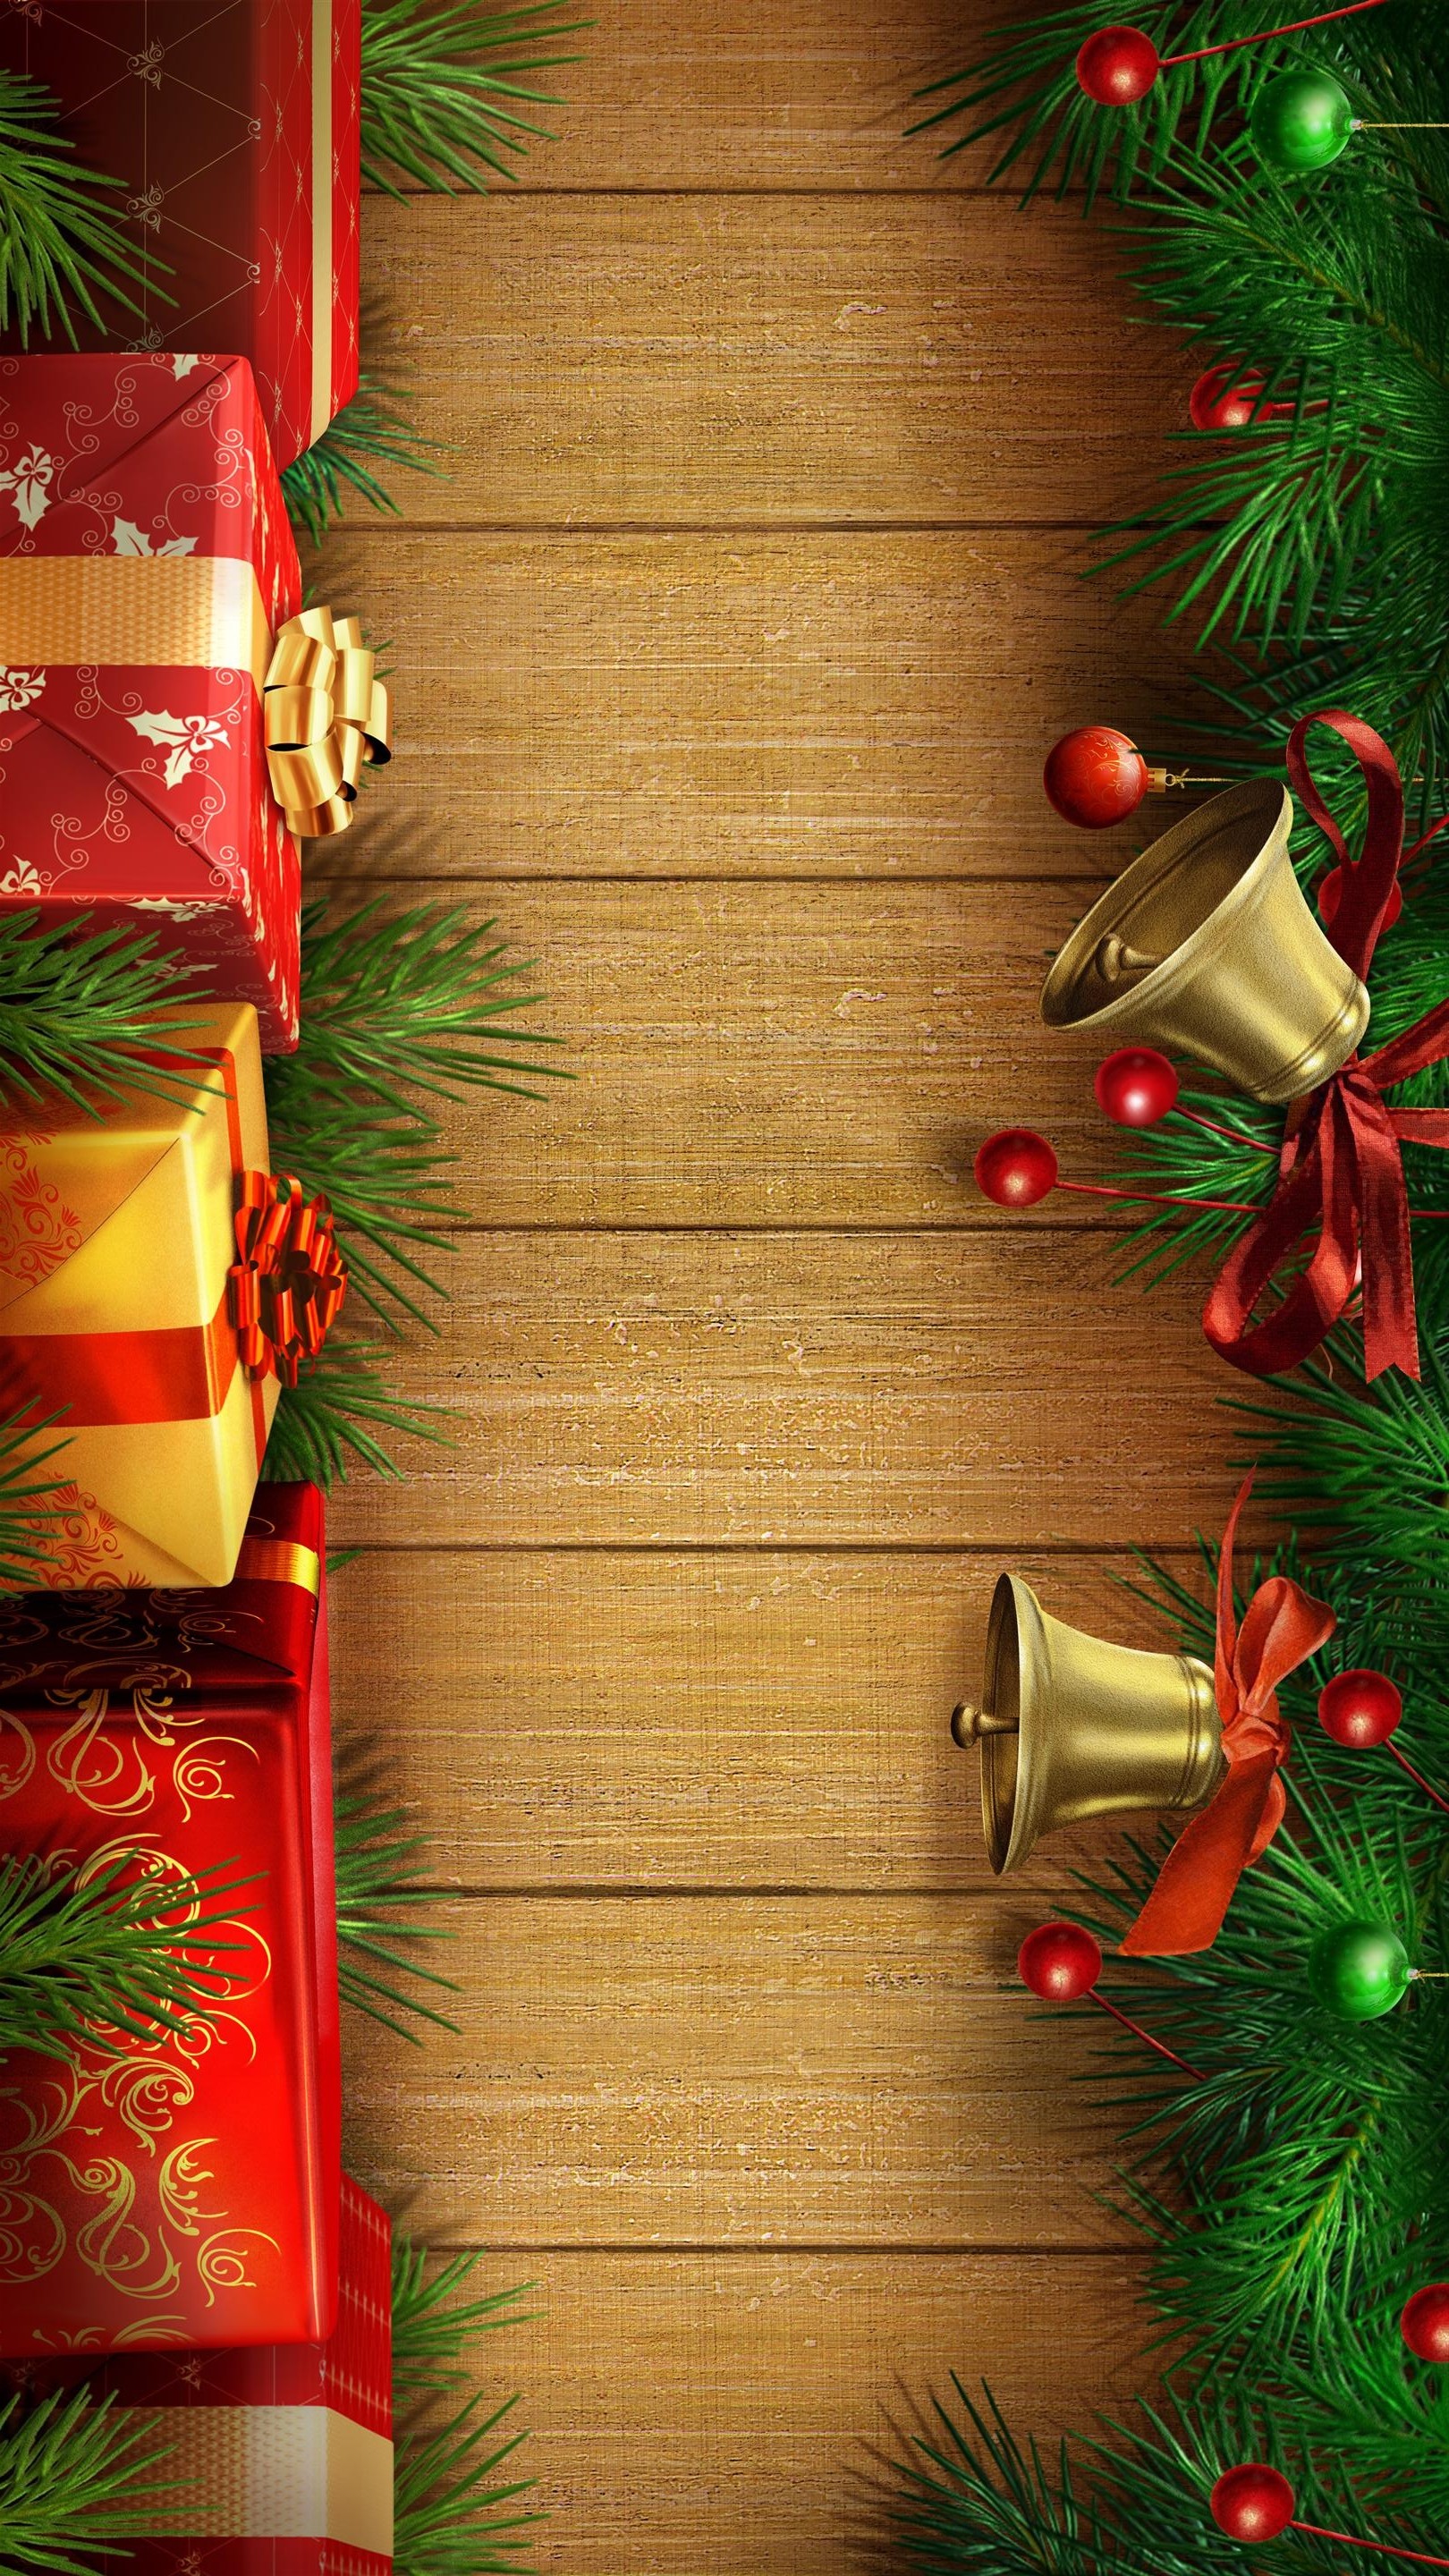 クリスマス壁紙hd iphone,クリスマスオーナメント,クリスマスの飾り,クリスマス,木,モミ